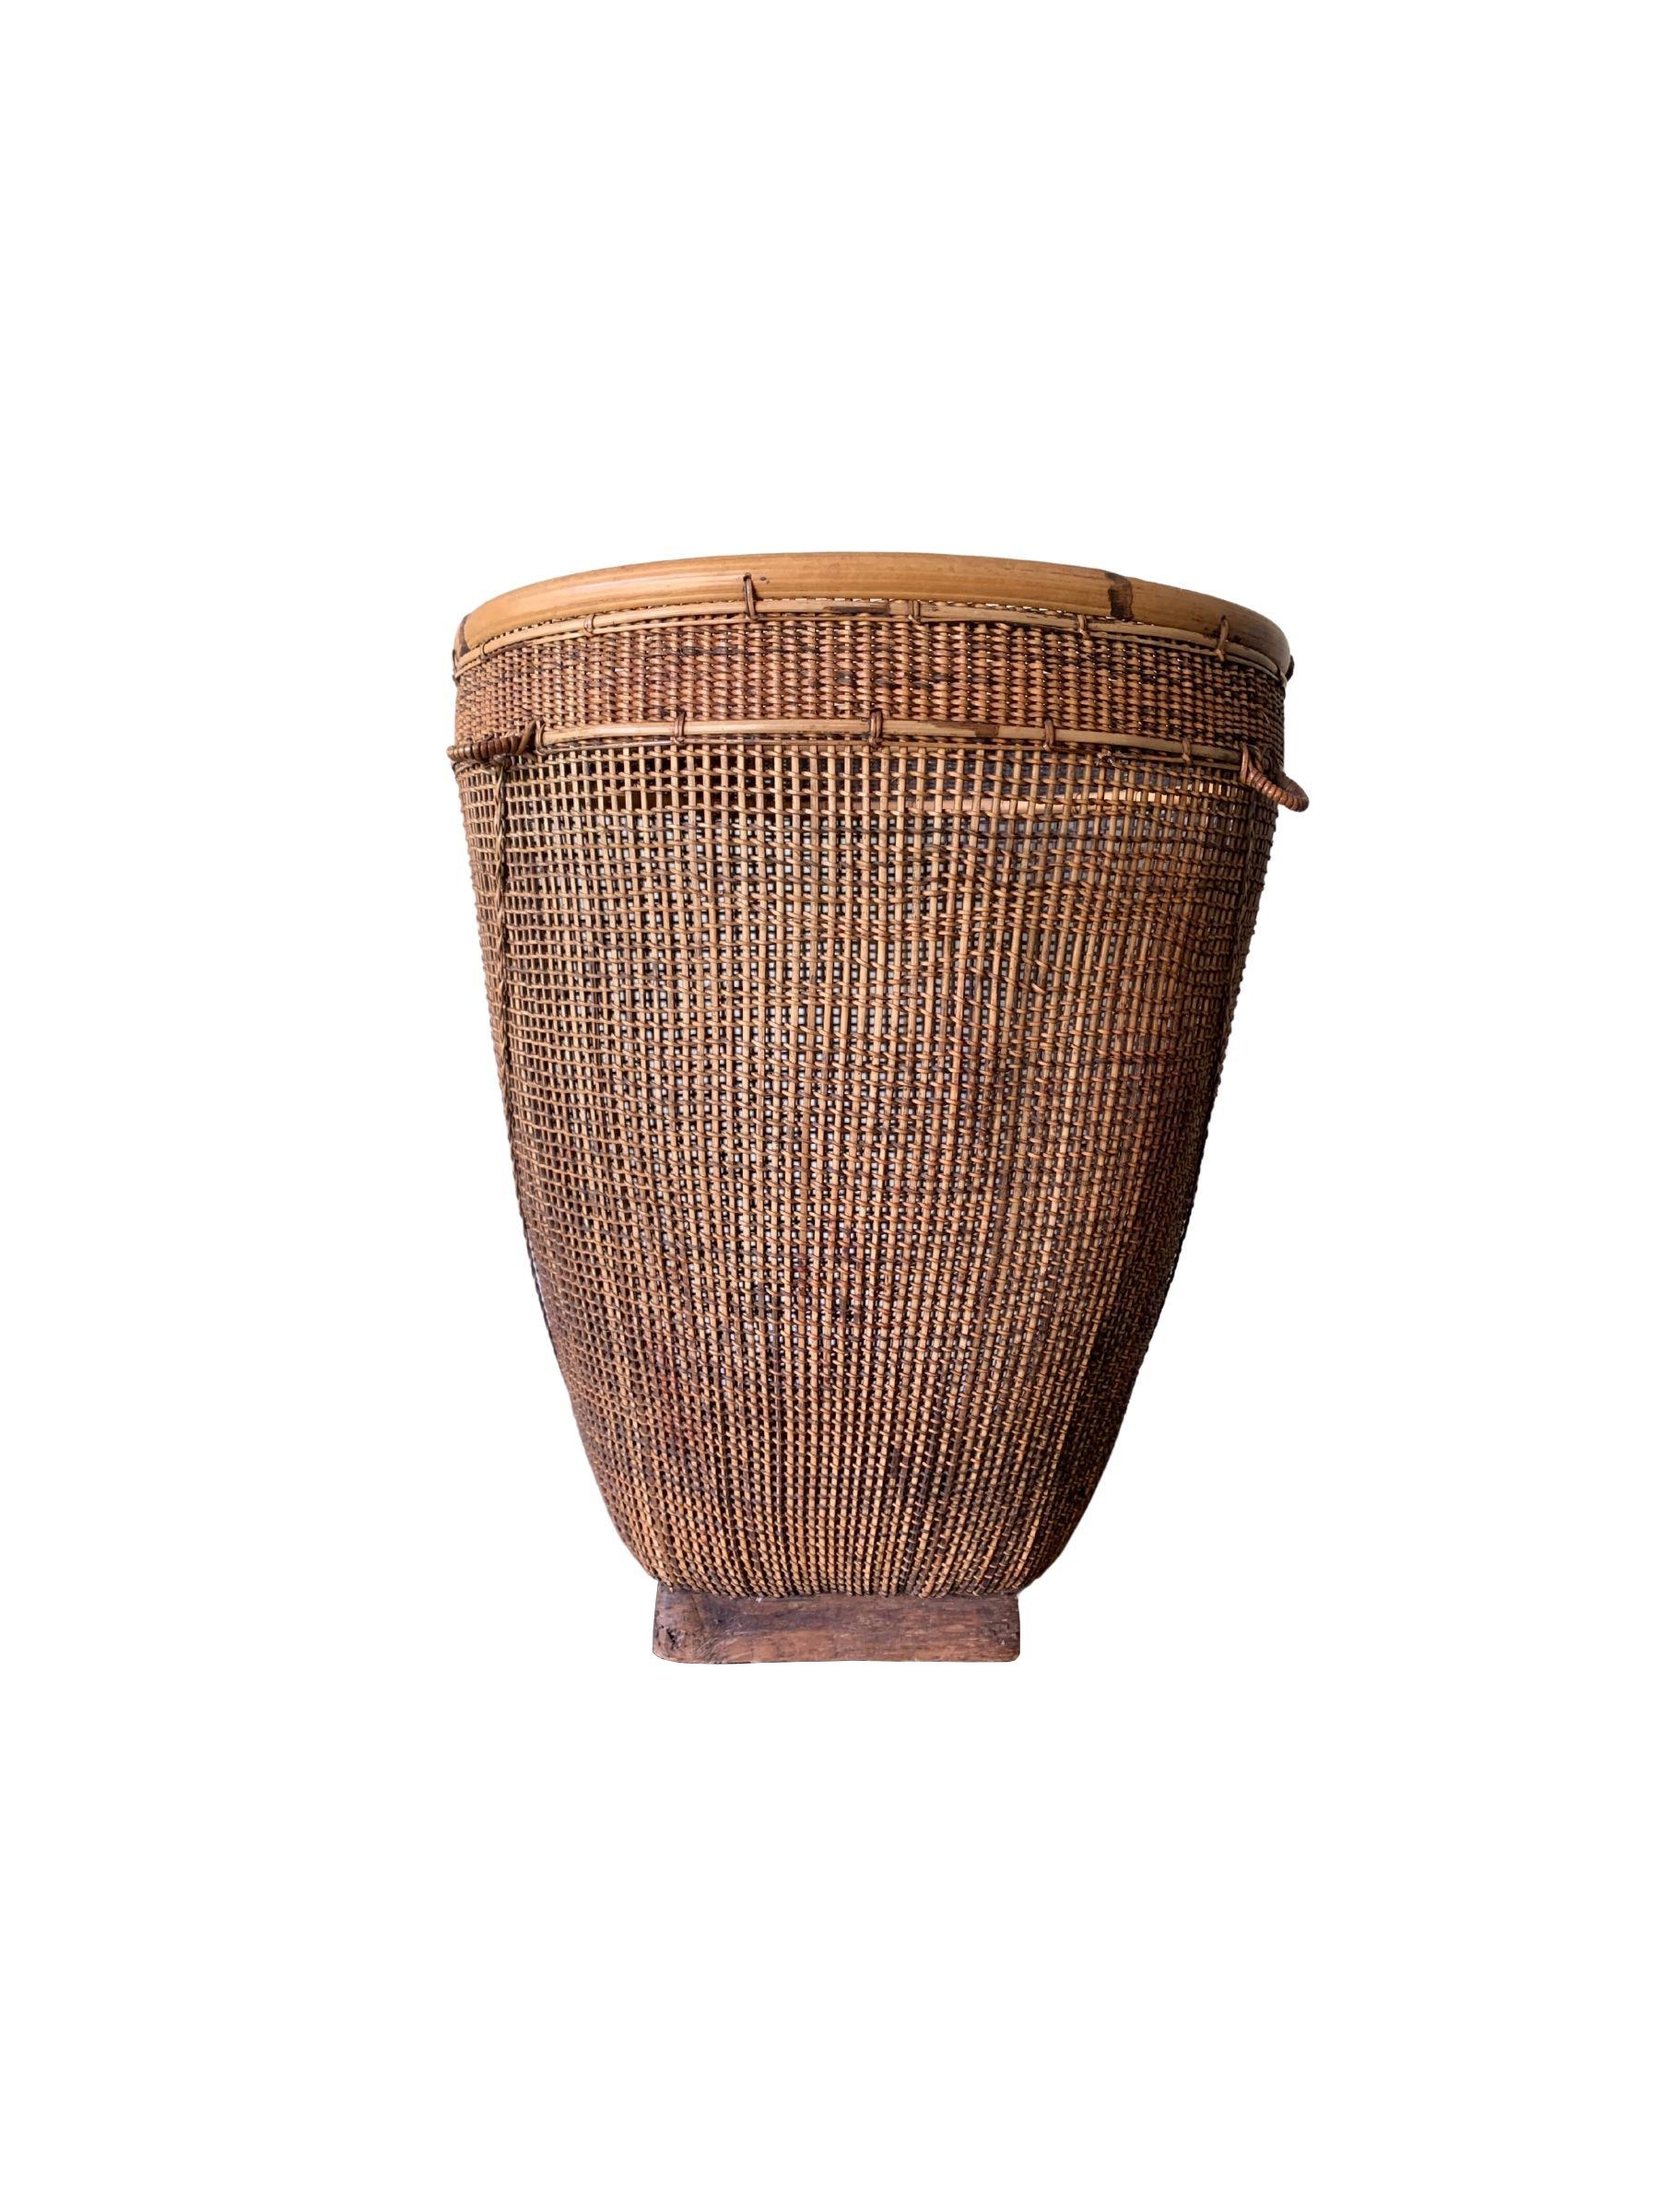 Ce panier tressé à la main au milieu du XXe siècle provient de la tribu Dayak de Bornéo et est fabriqué à partir de fibres de bambou et de rotin. Le cadre est fabriqué en bambou et la combinaison des techniques de tissage du bambou et du rotin crée